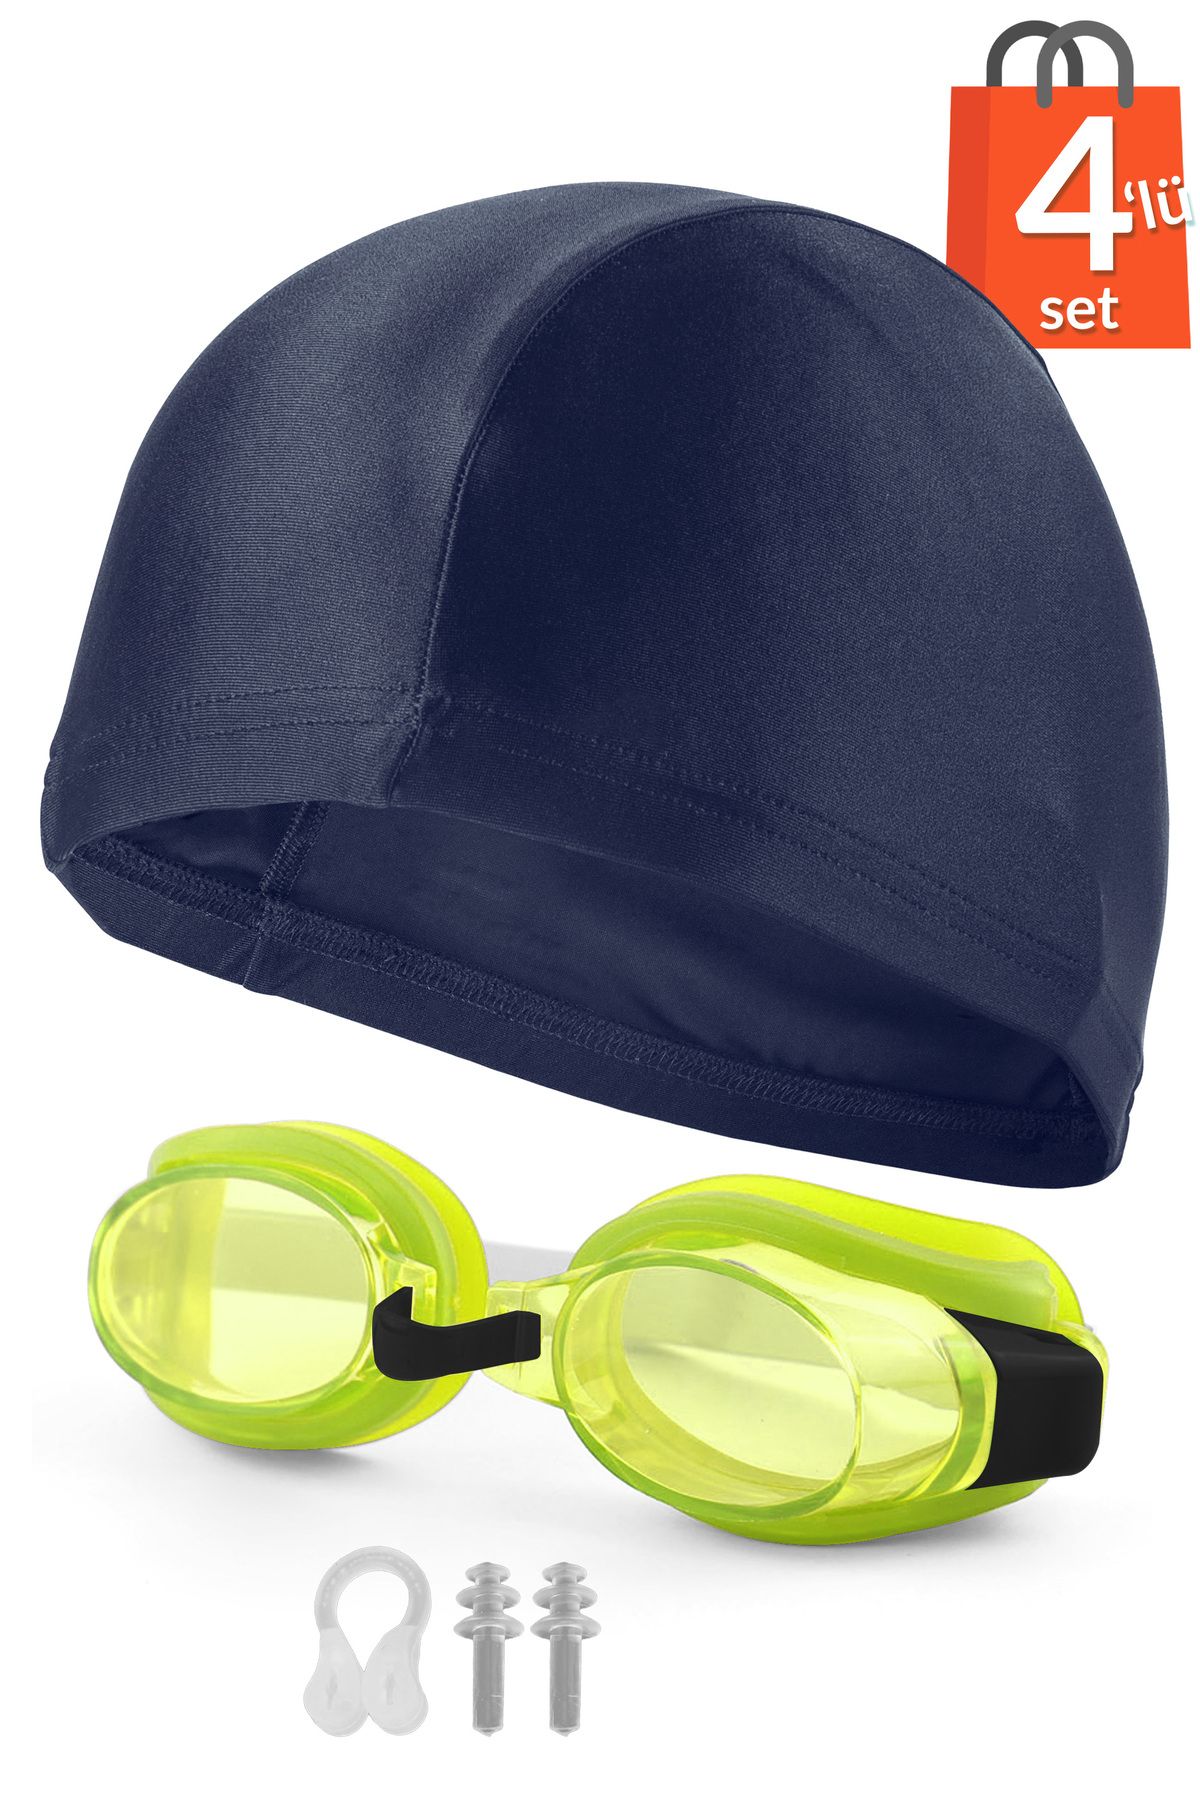 Telvesse 4lü Set Yüzücü Gözlüğü Kumaş Bone Kulak Ve Burun Tıkaçlı Set Yüzme Havuz Deniz Gözlüğü Sarı